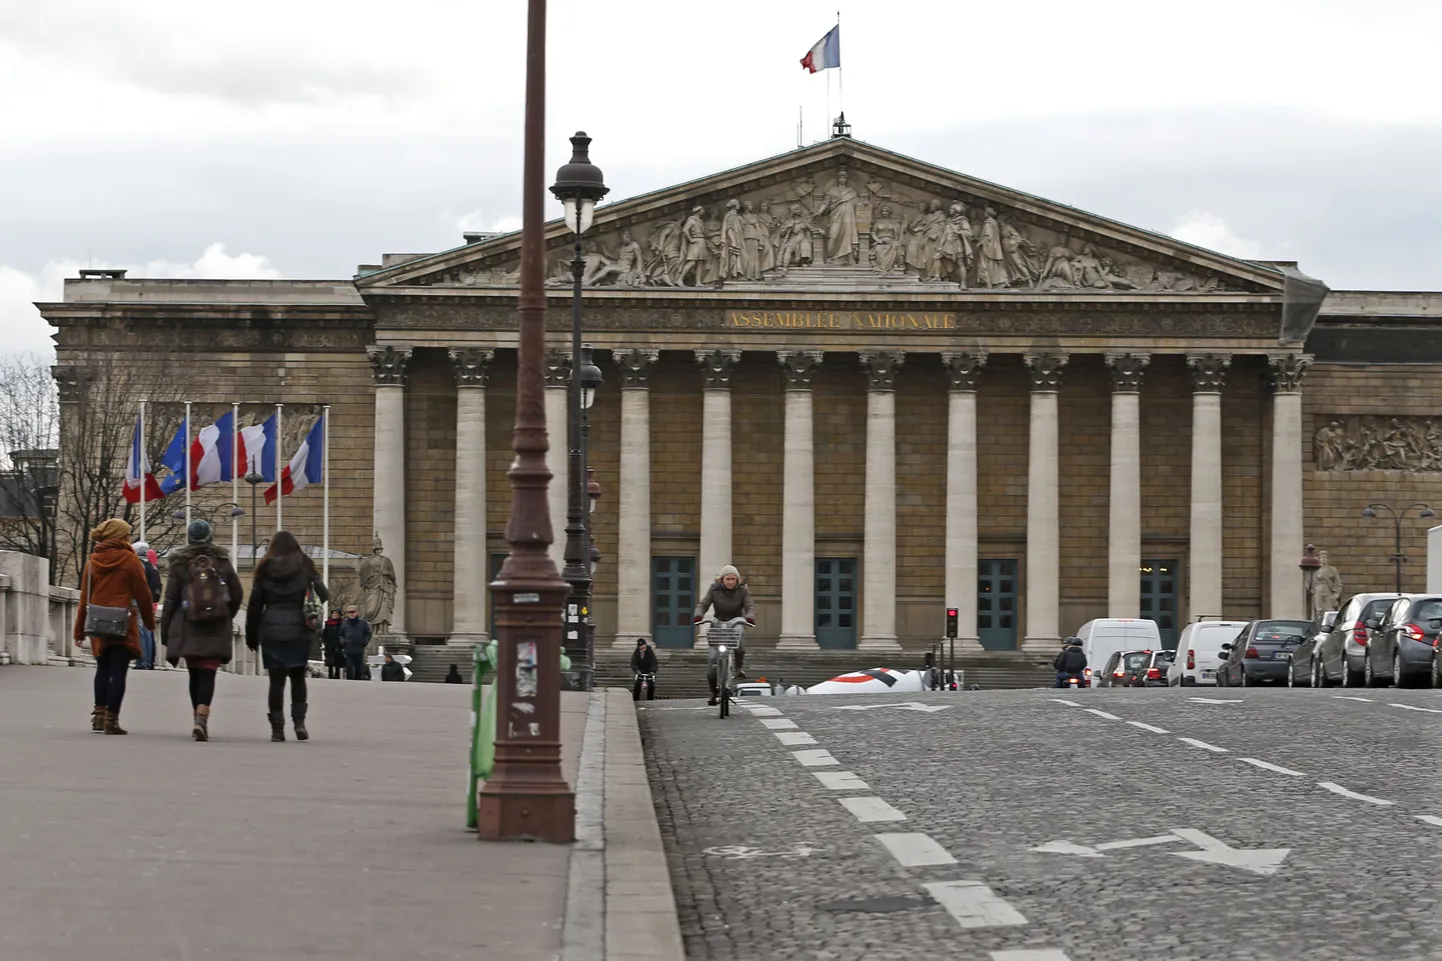 Prantsuse Rahvusassamblee hoone Pariisis.